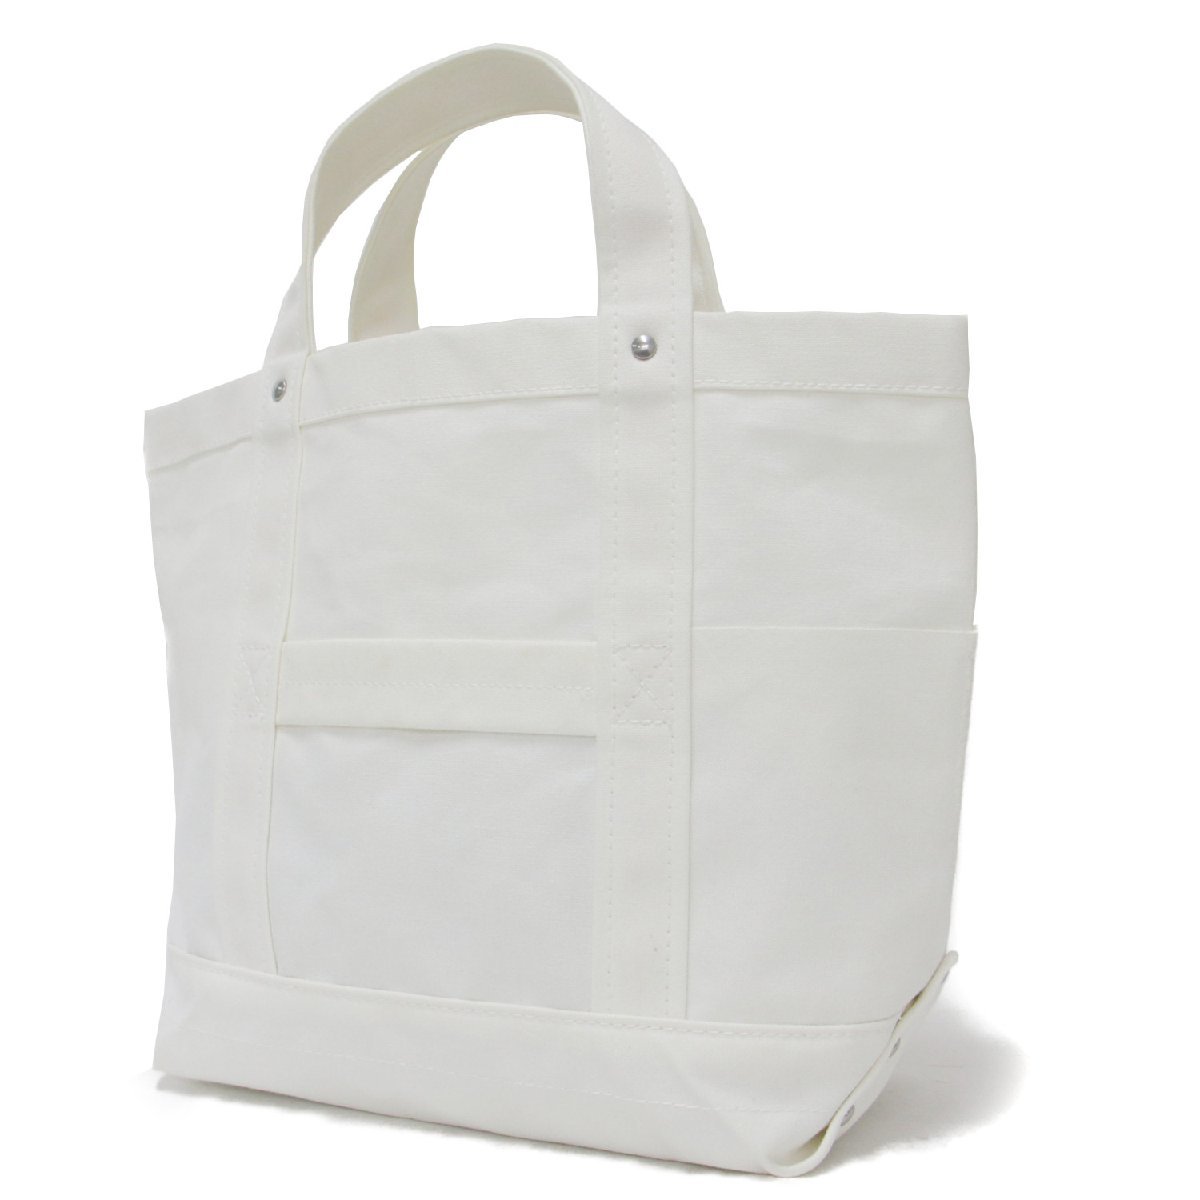 YAECA ヤエカ バッグ トート ツールバッグ A4 キャンバス シンプル ベーシック コットン 綿 ホワイト 白 日本製 ブランド カバン